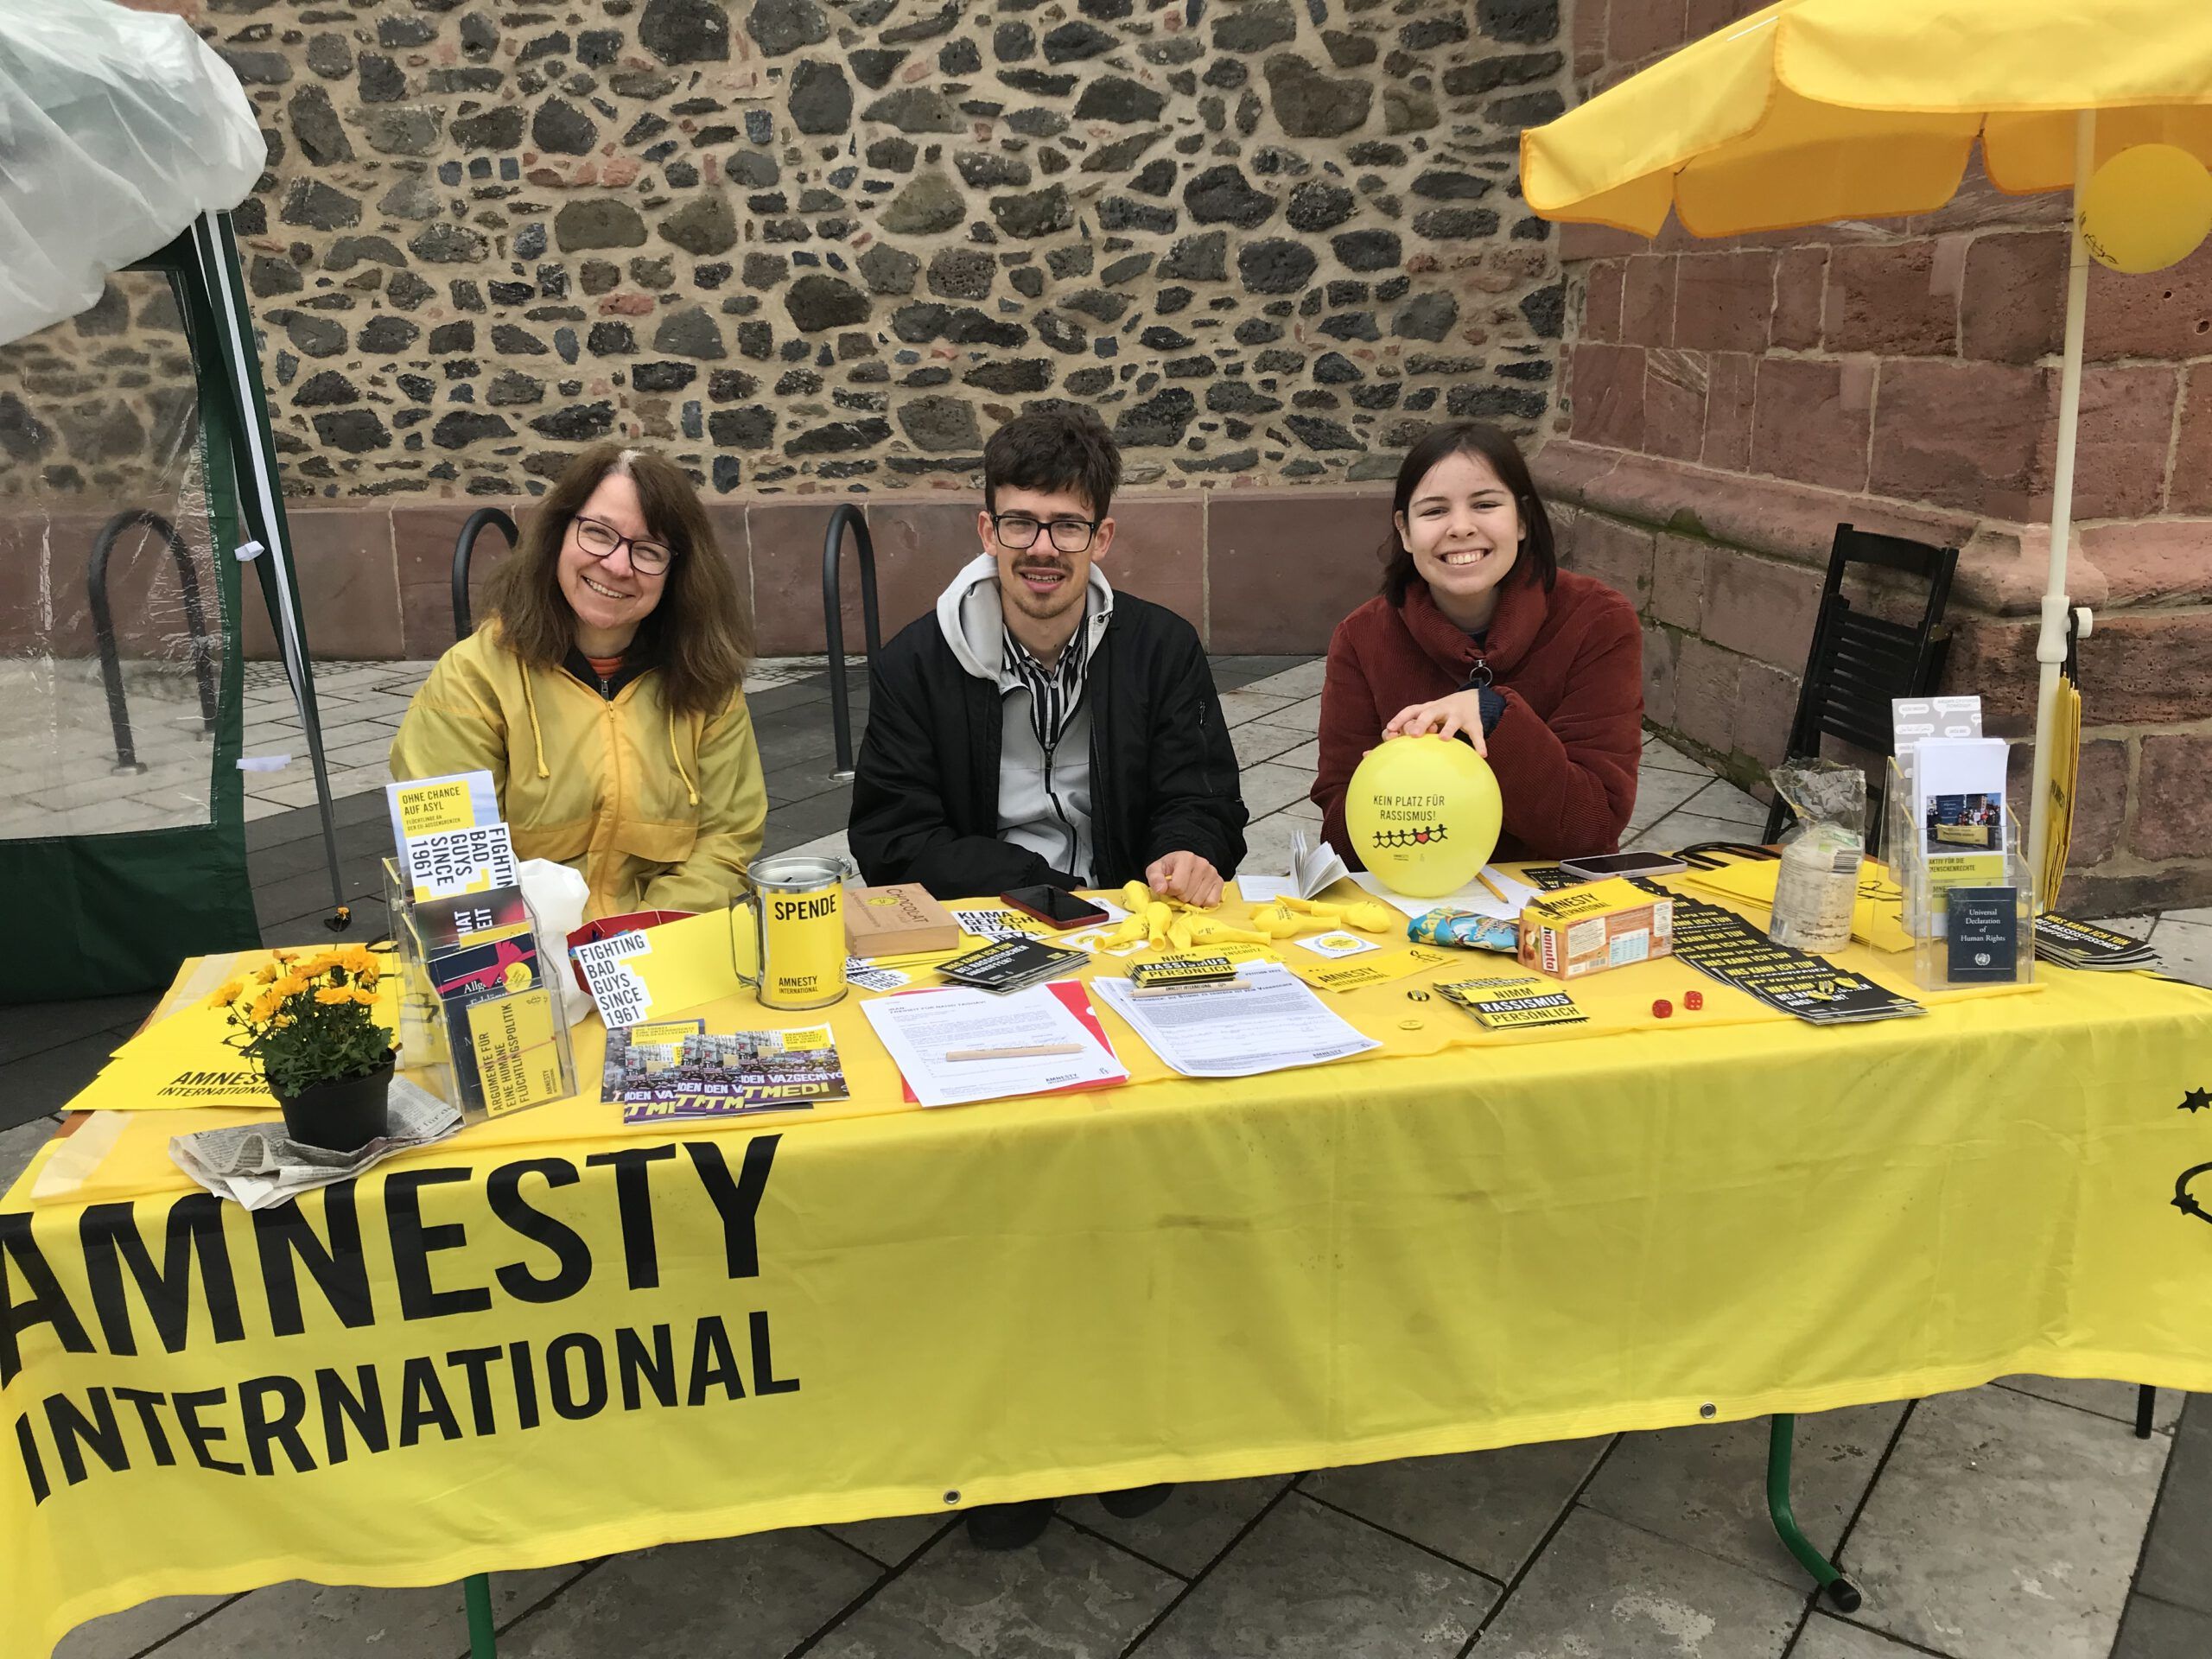 Tisch mit gelben Decktuch auf dem Amnesty International steht mit 3 Personen die dahinter sitzen